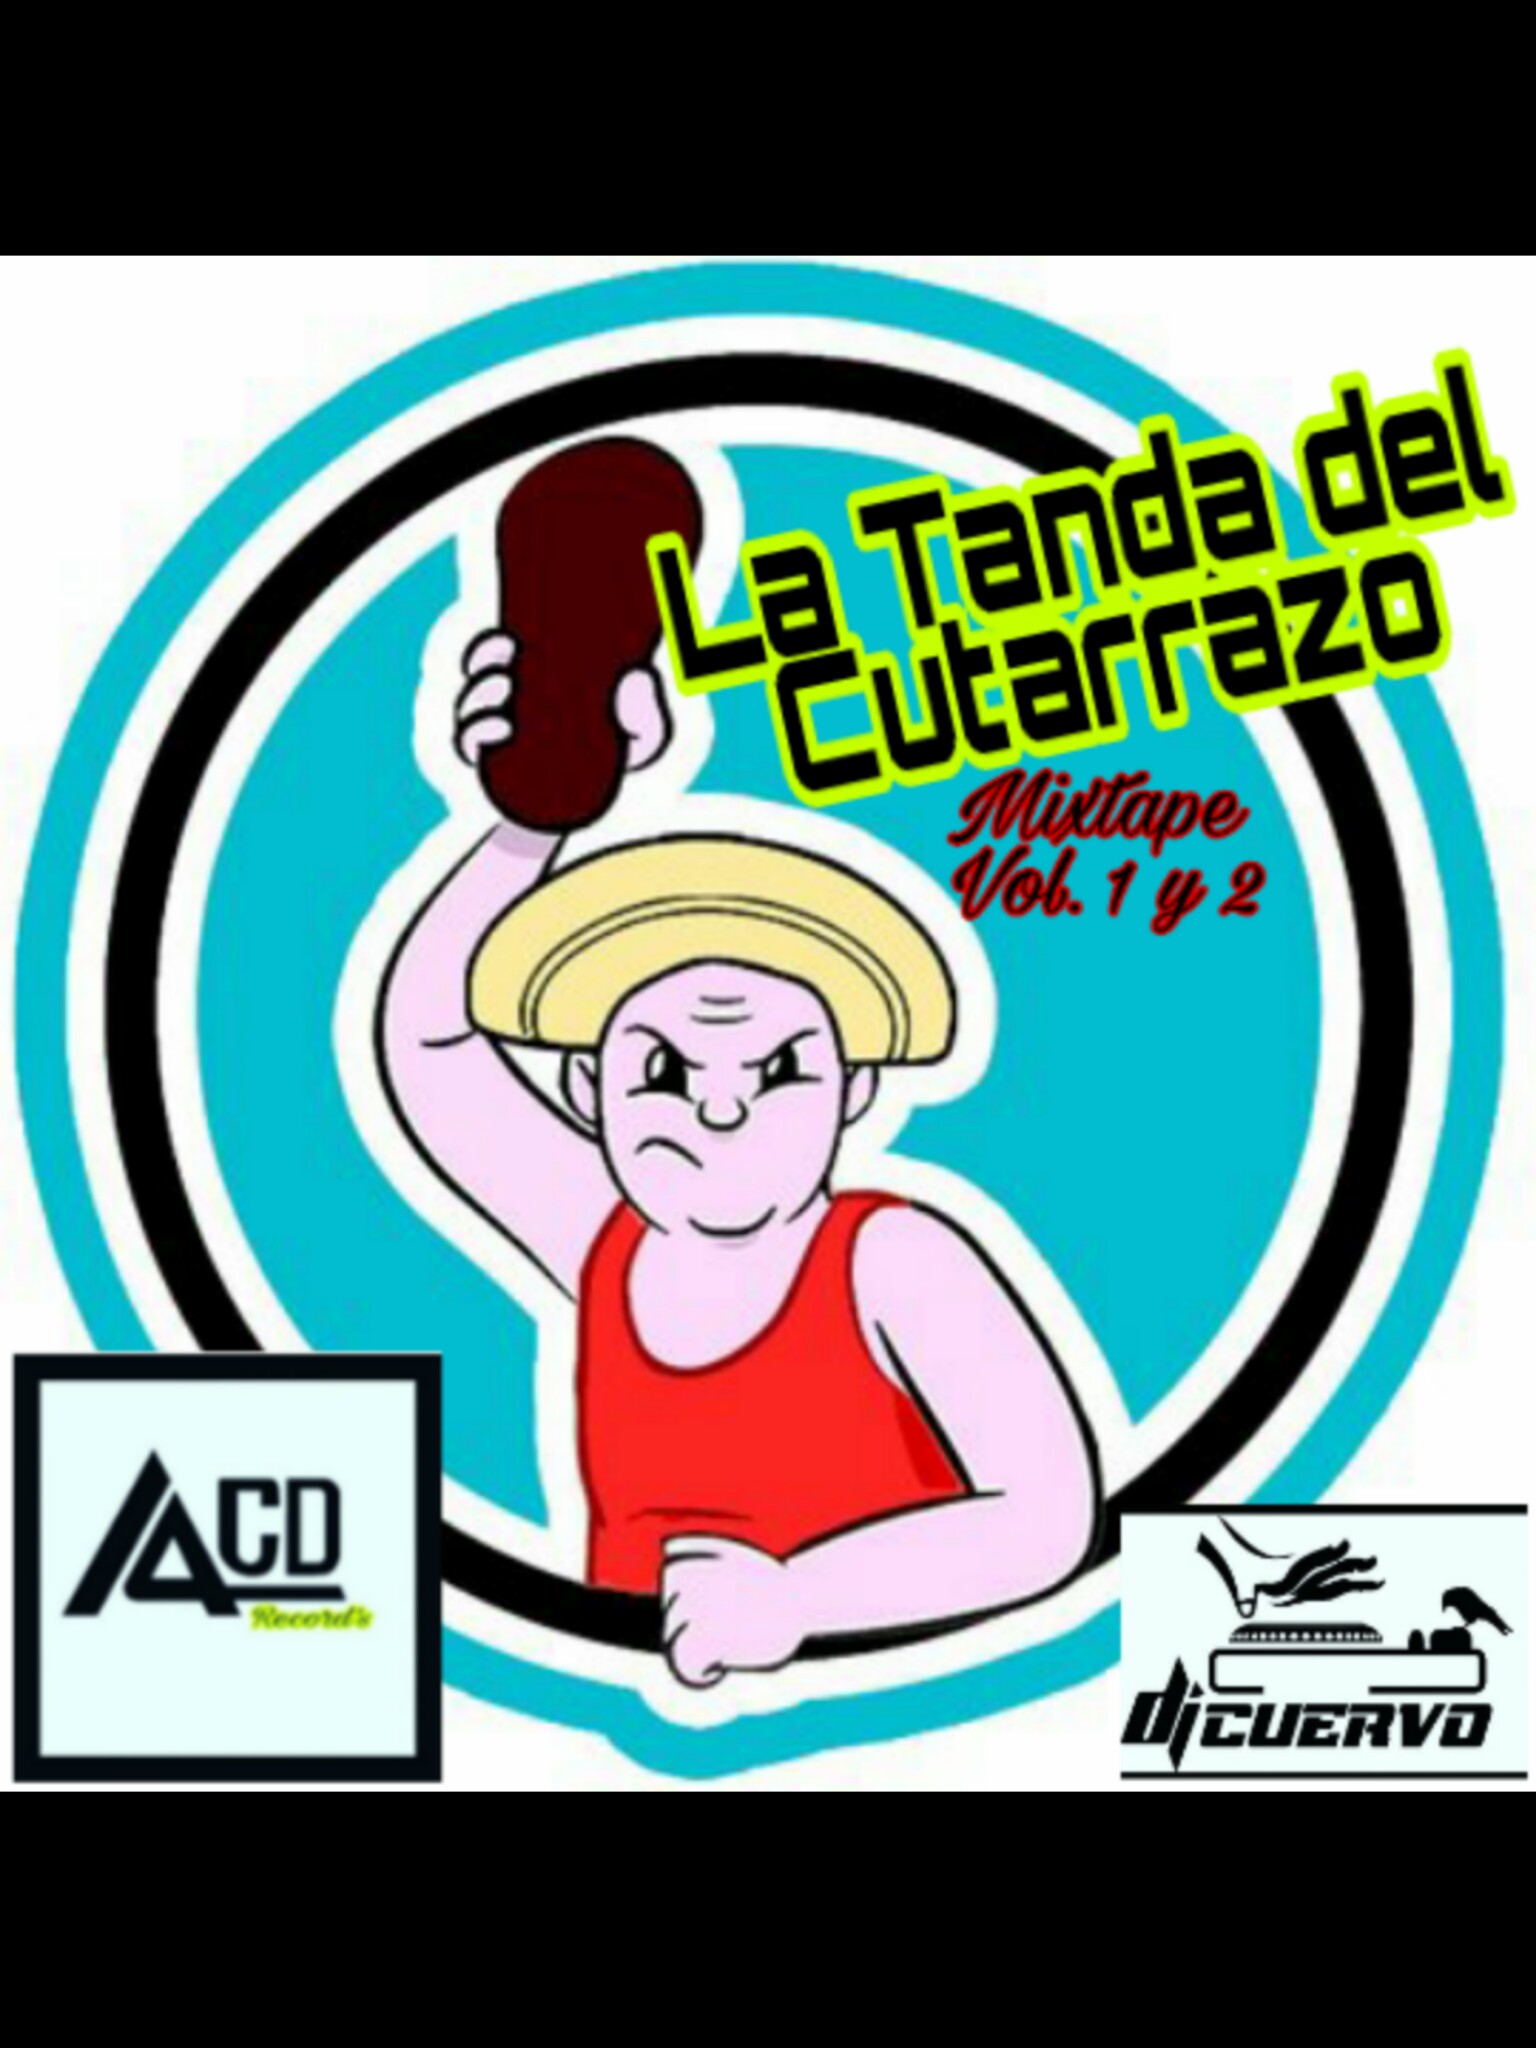 LA TANDA DEL CUTARRAZO MIXTAPE VOL 2- DJ CUERVO